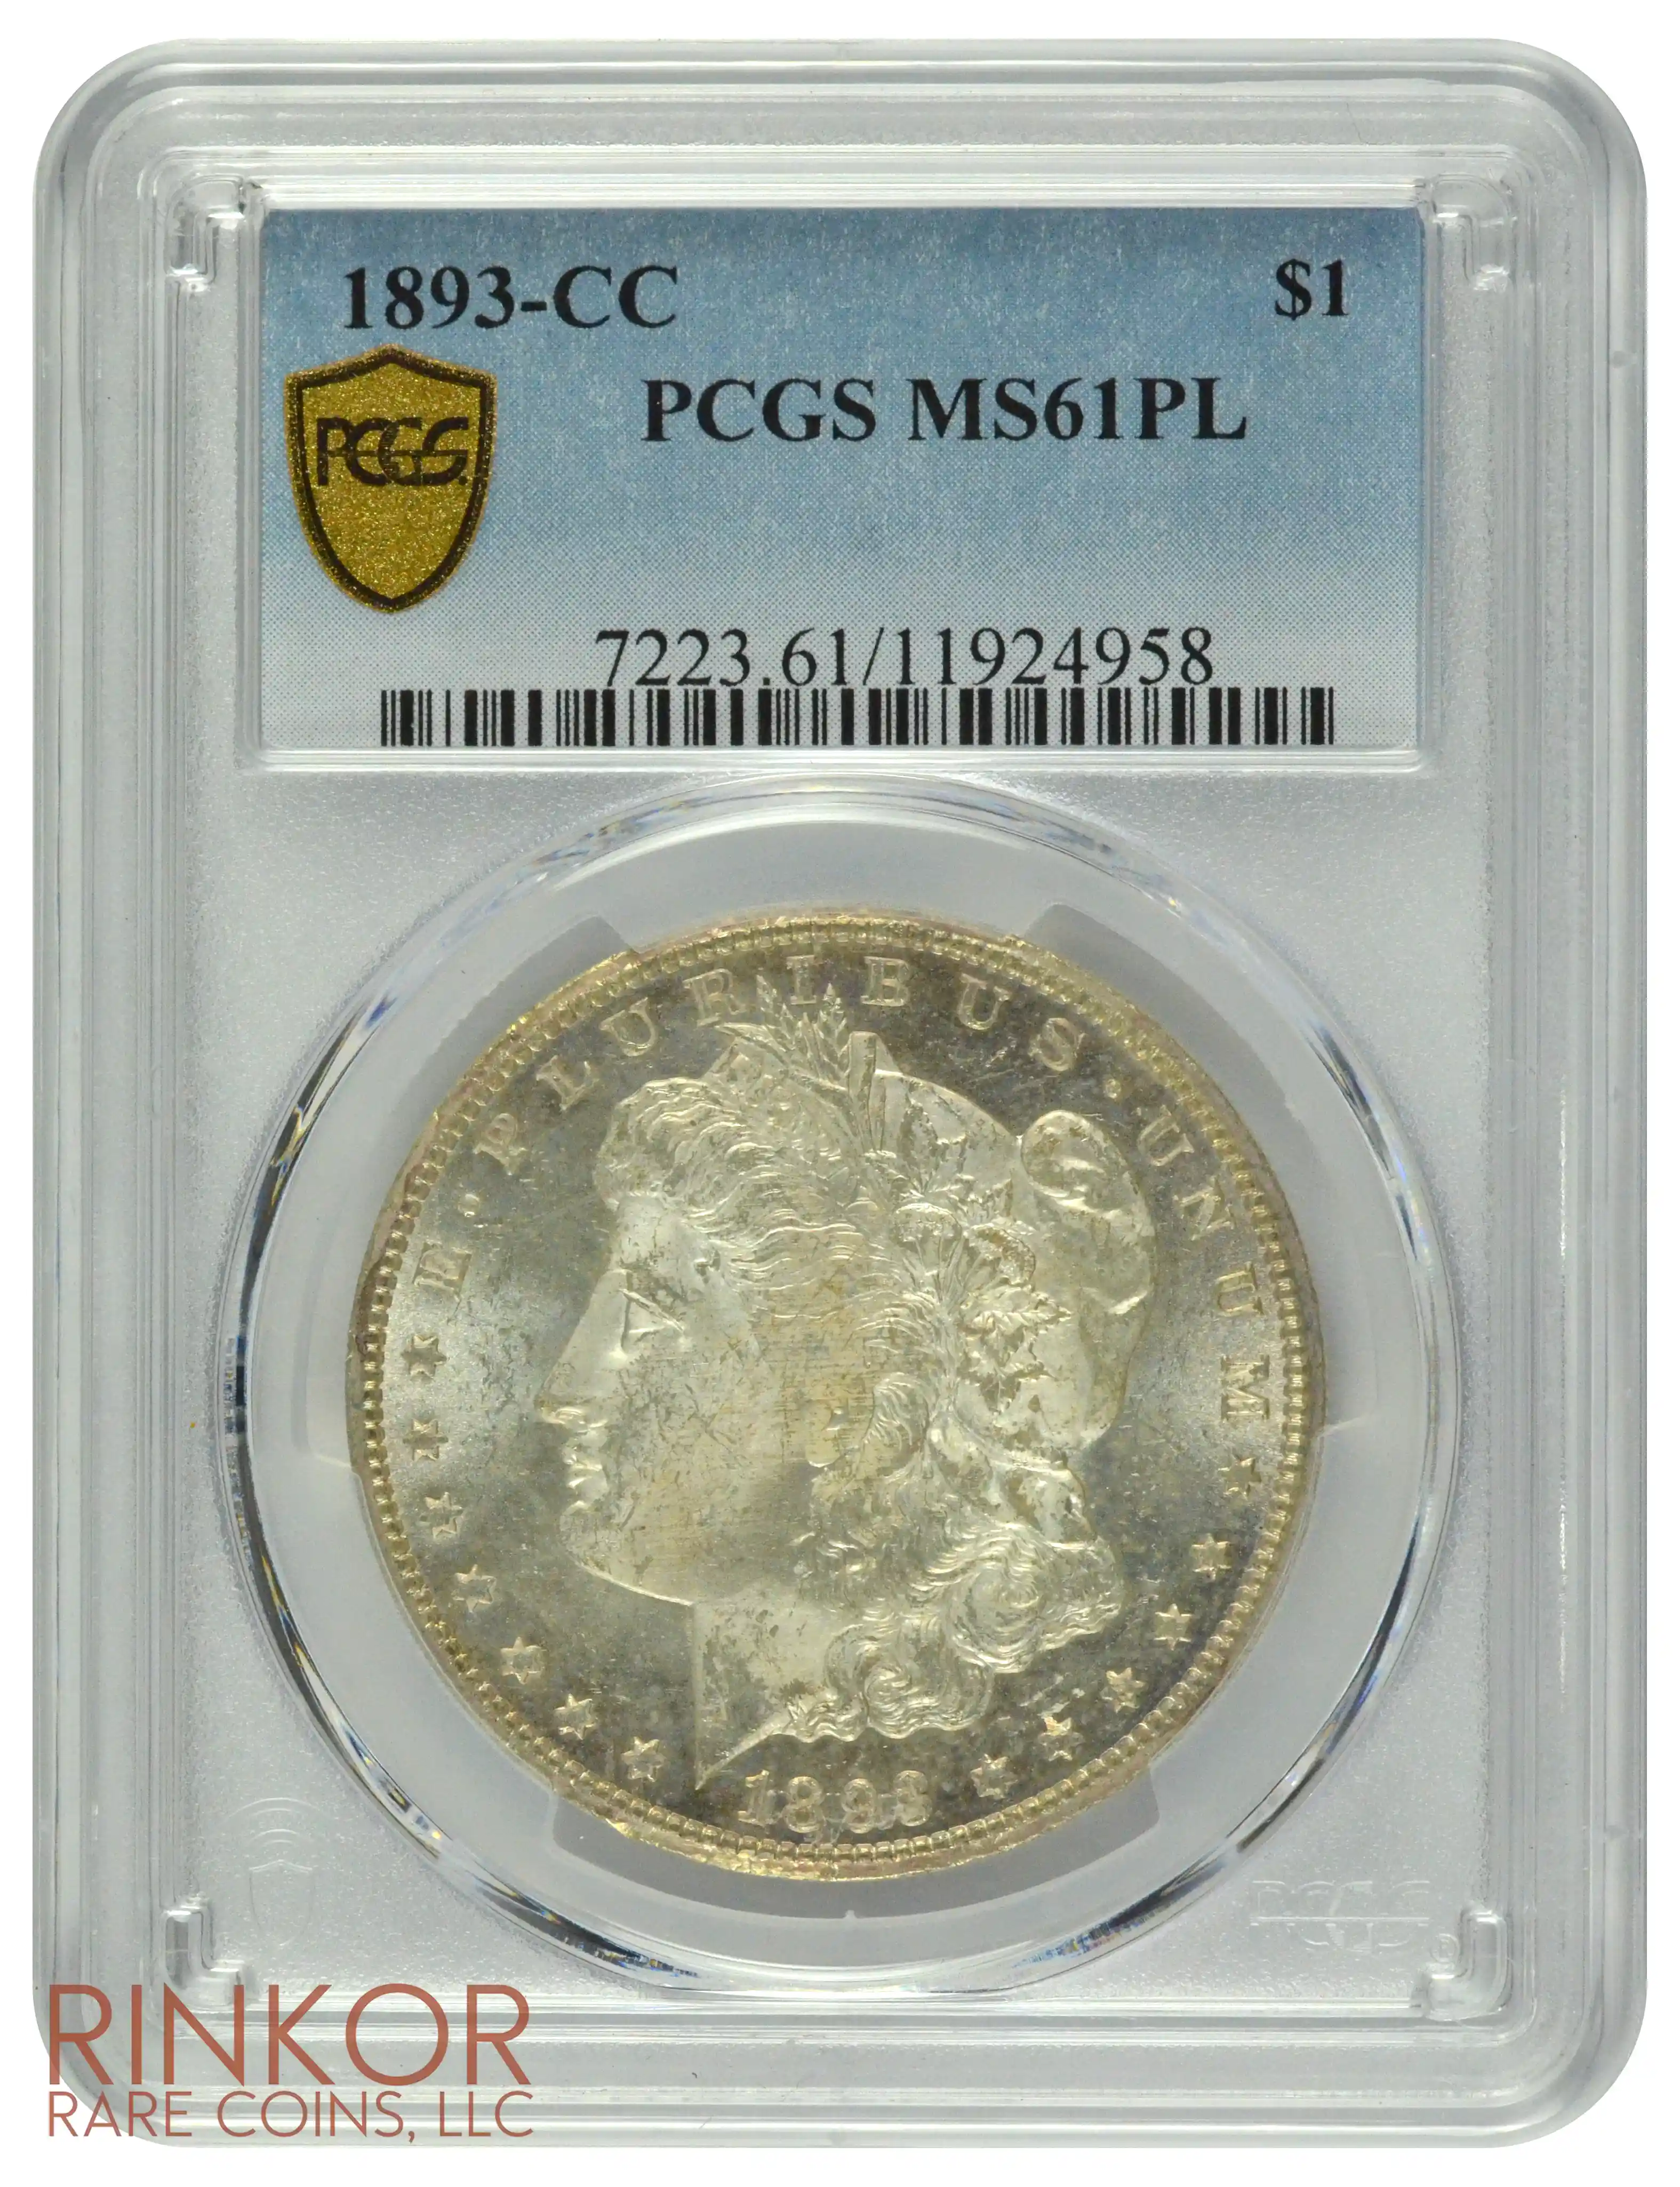 1893-CC $1 PCGS MS 61 PL